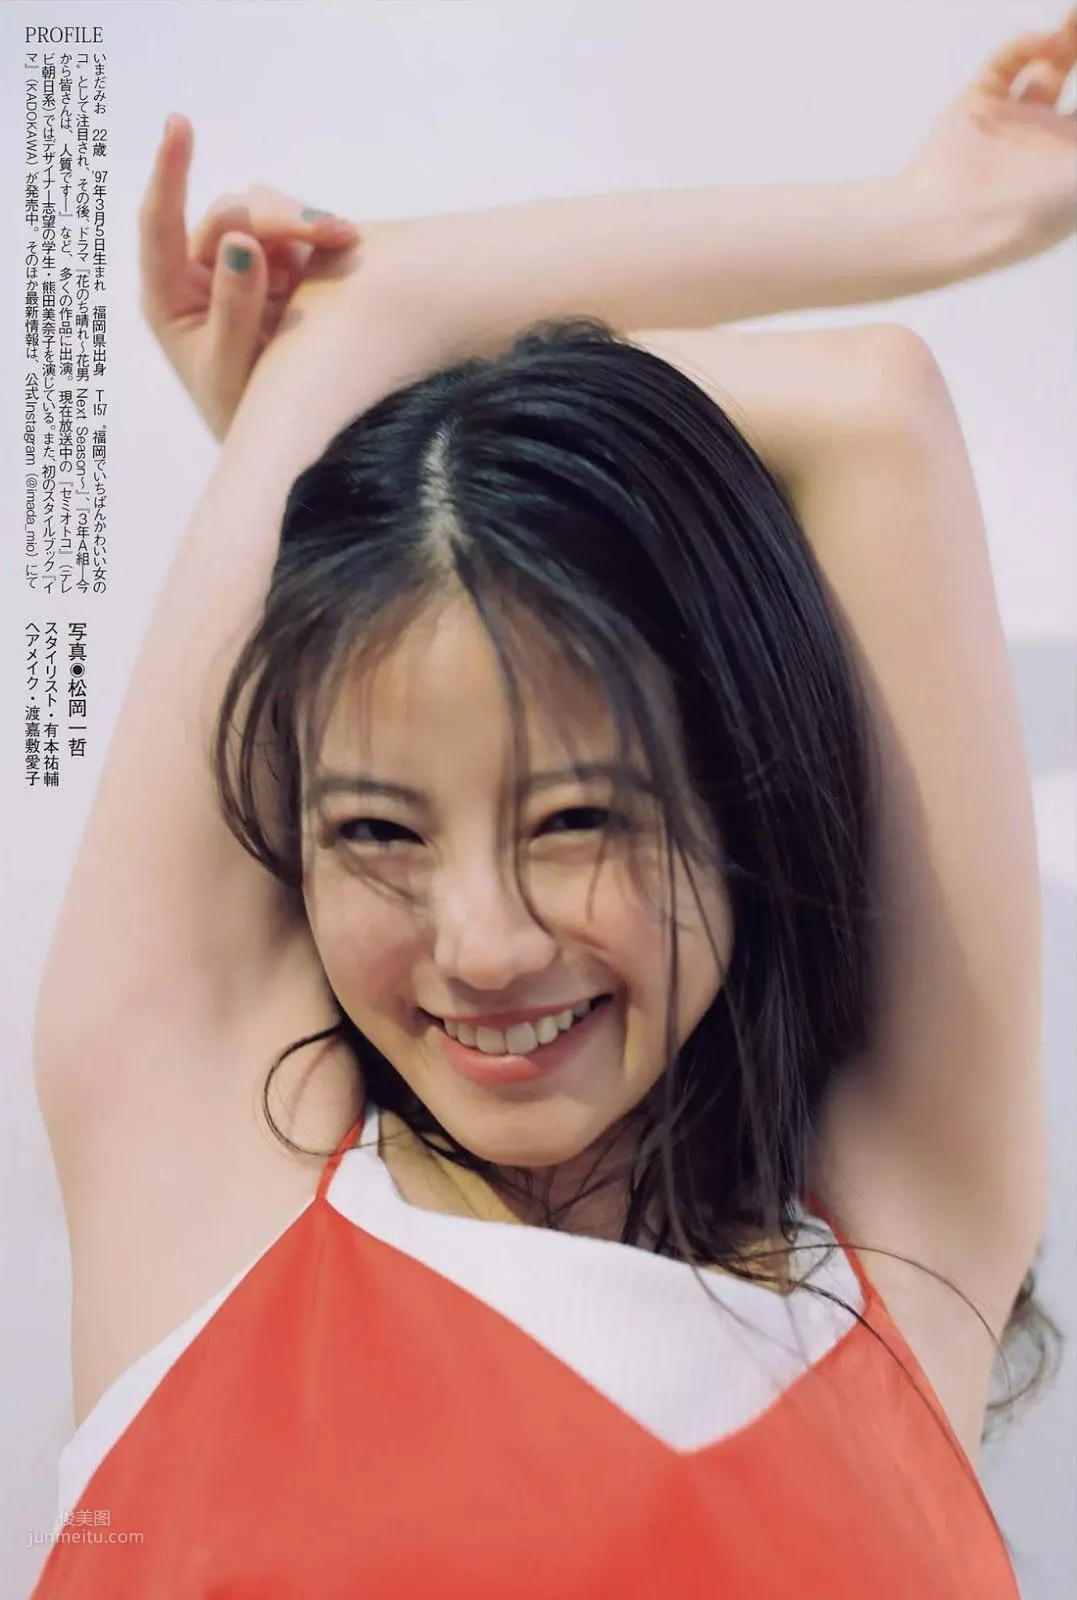 今田美桜, Imada Mio - Weekly Playboy, FLASH, FRIDAY, 2019_54